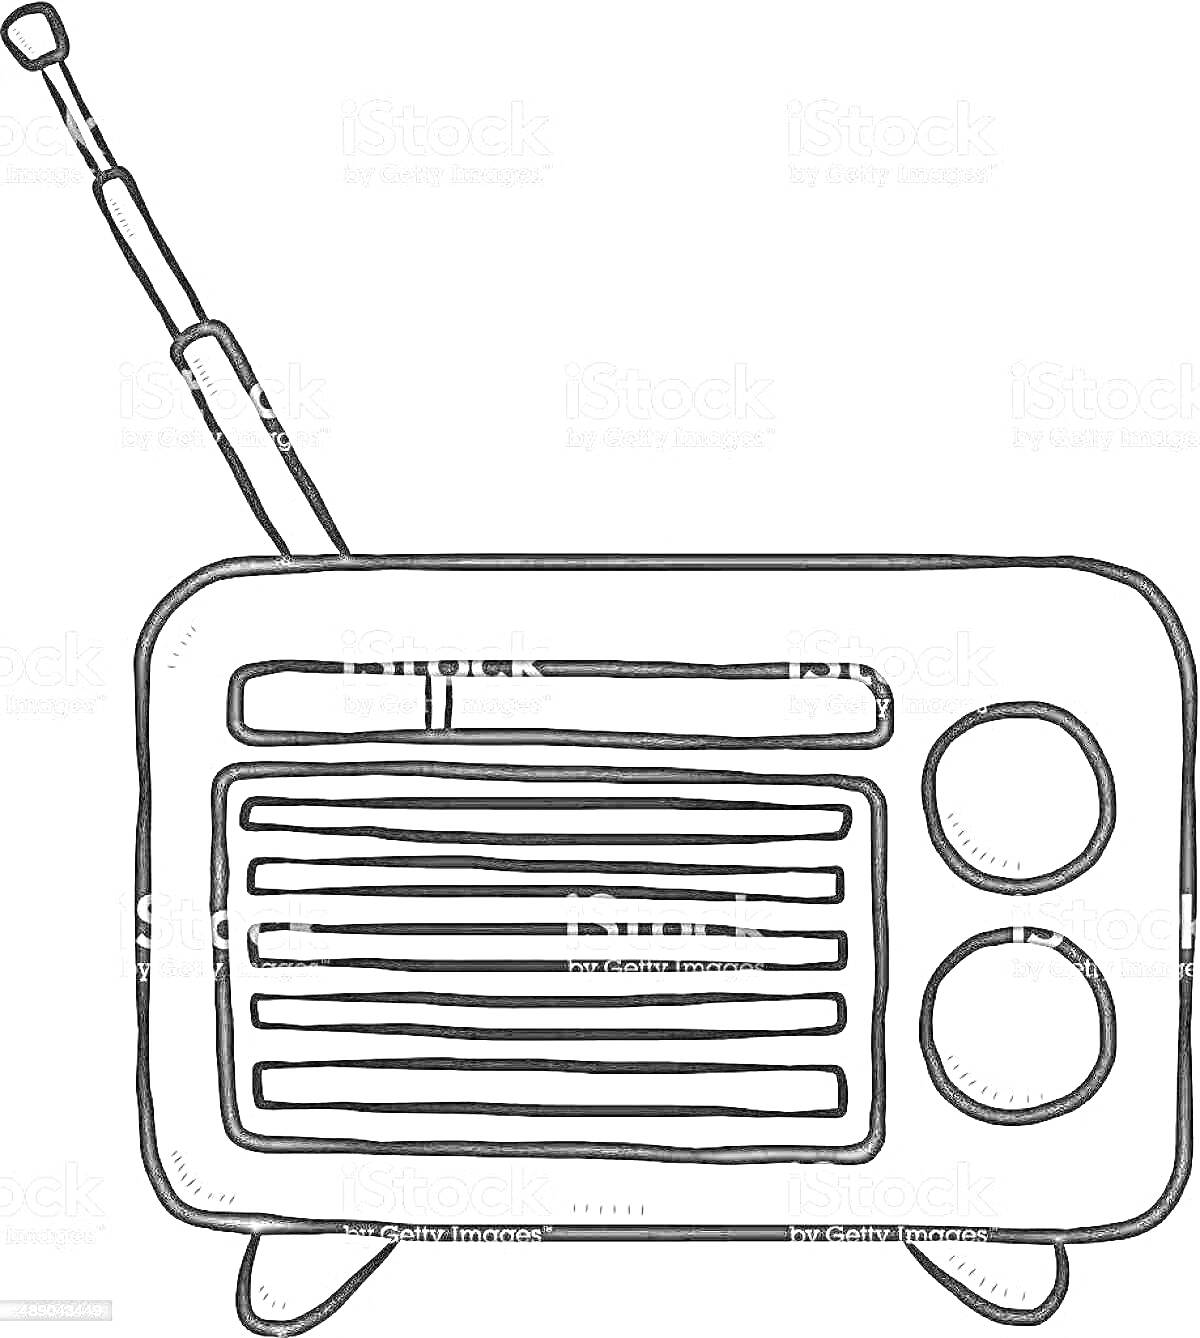 Радиоприемник с антенной, двумя ручками настройки и динамиком